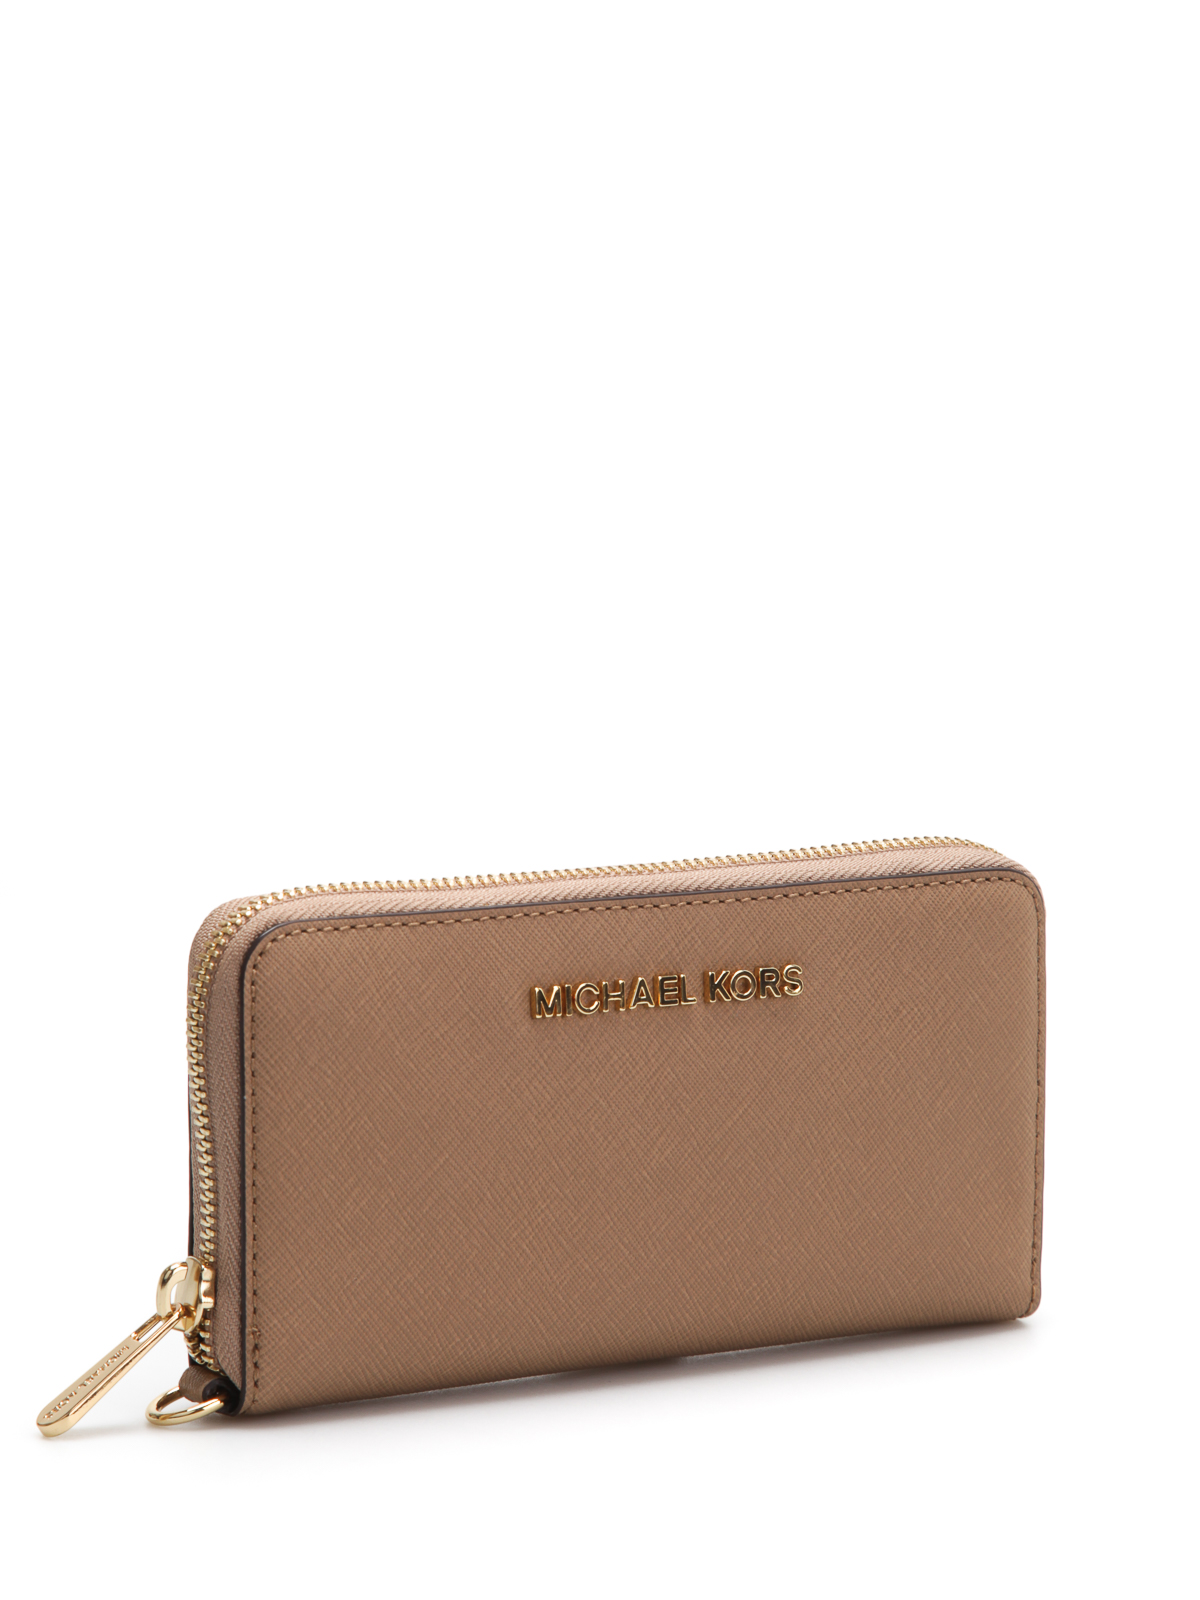 Wallets & purses Michael Kors - Jet Set Travel leather wallet - 32T4GTVE3L